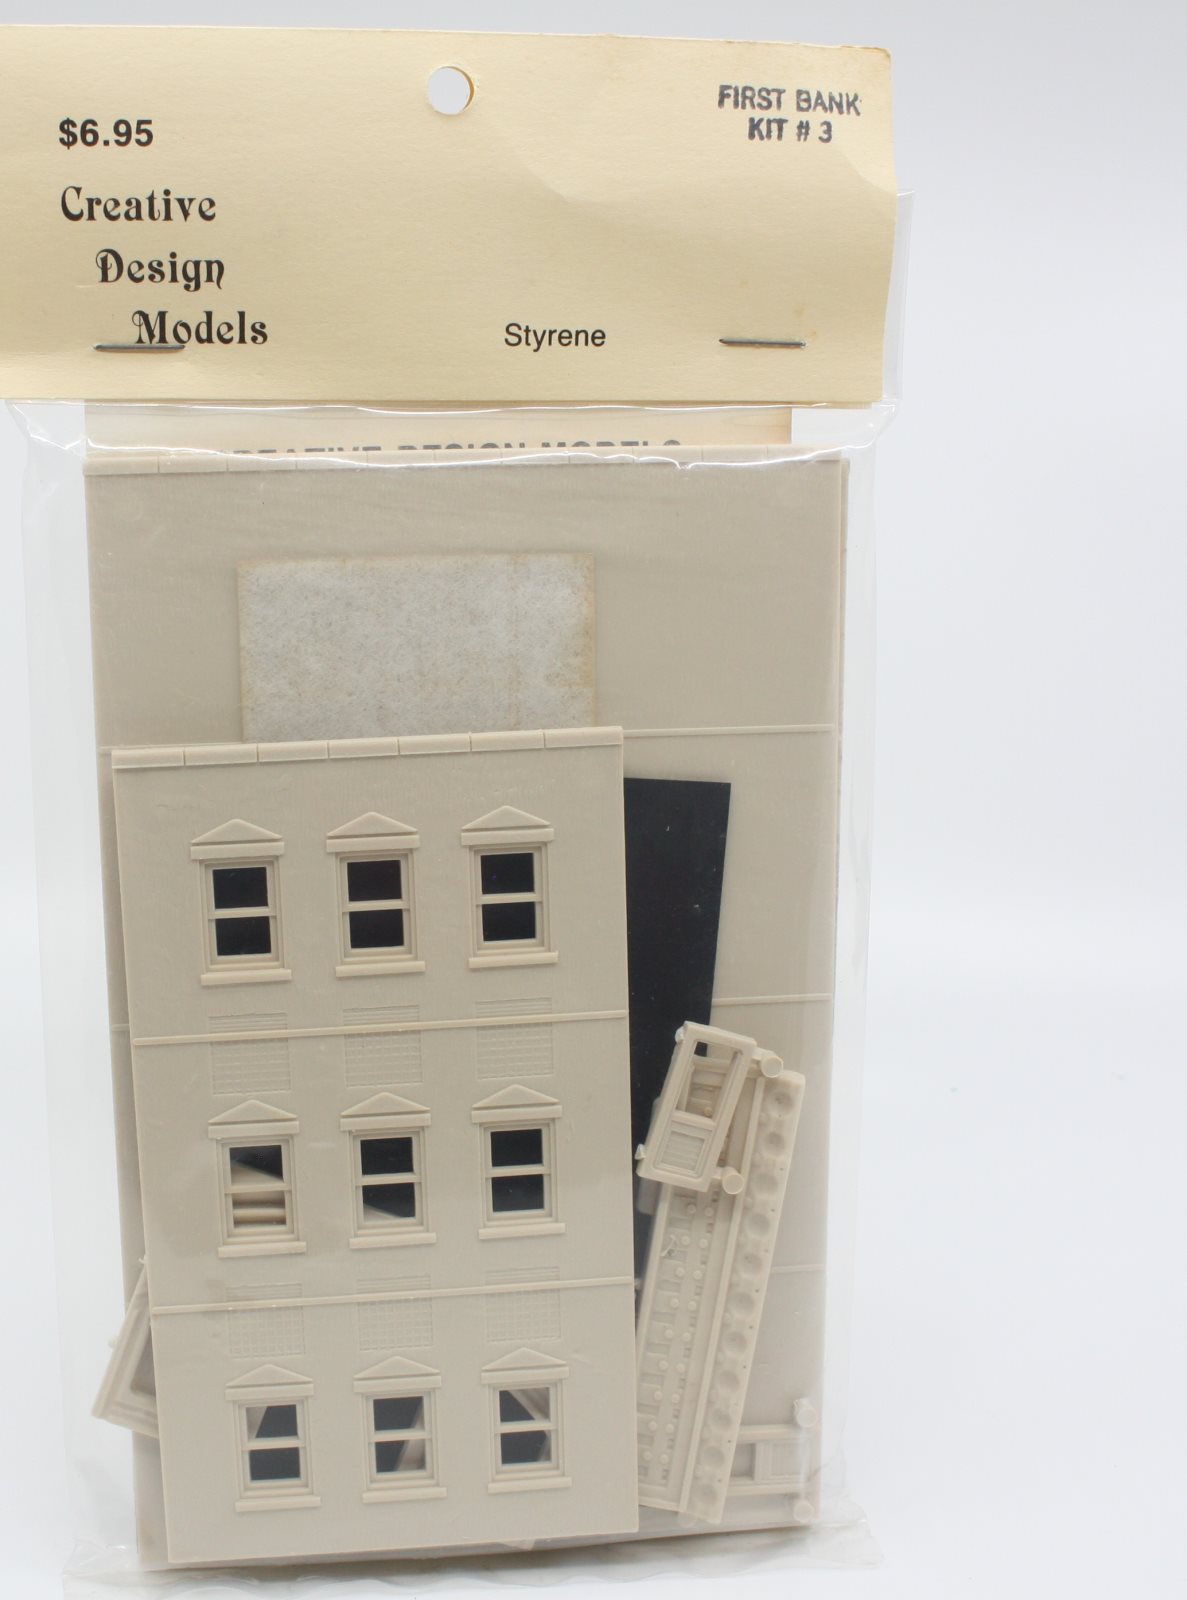 Creative Design Models 3 HO First Bank Building Kit